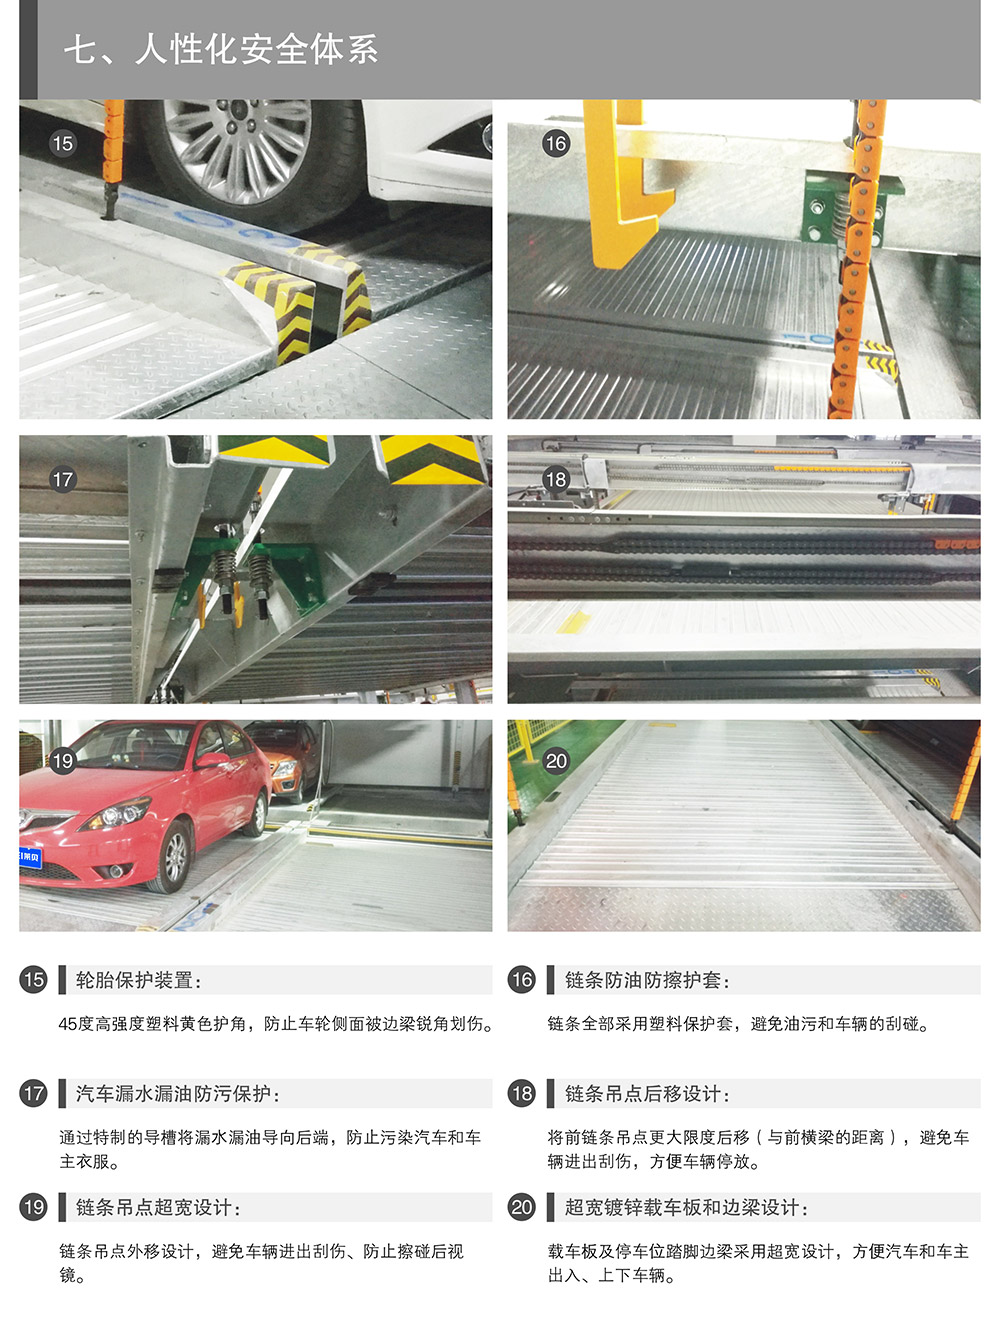 重庆四川PSH2单列二层升降横移立体车库人性化安全体系.jpg